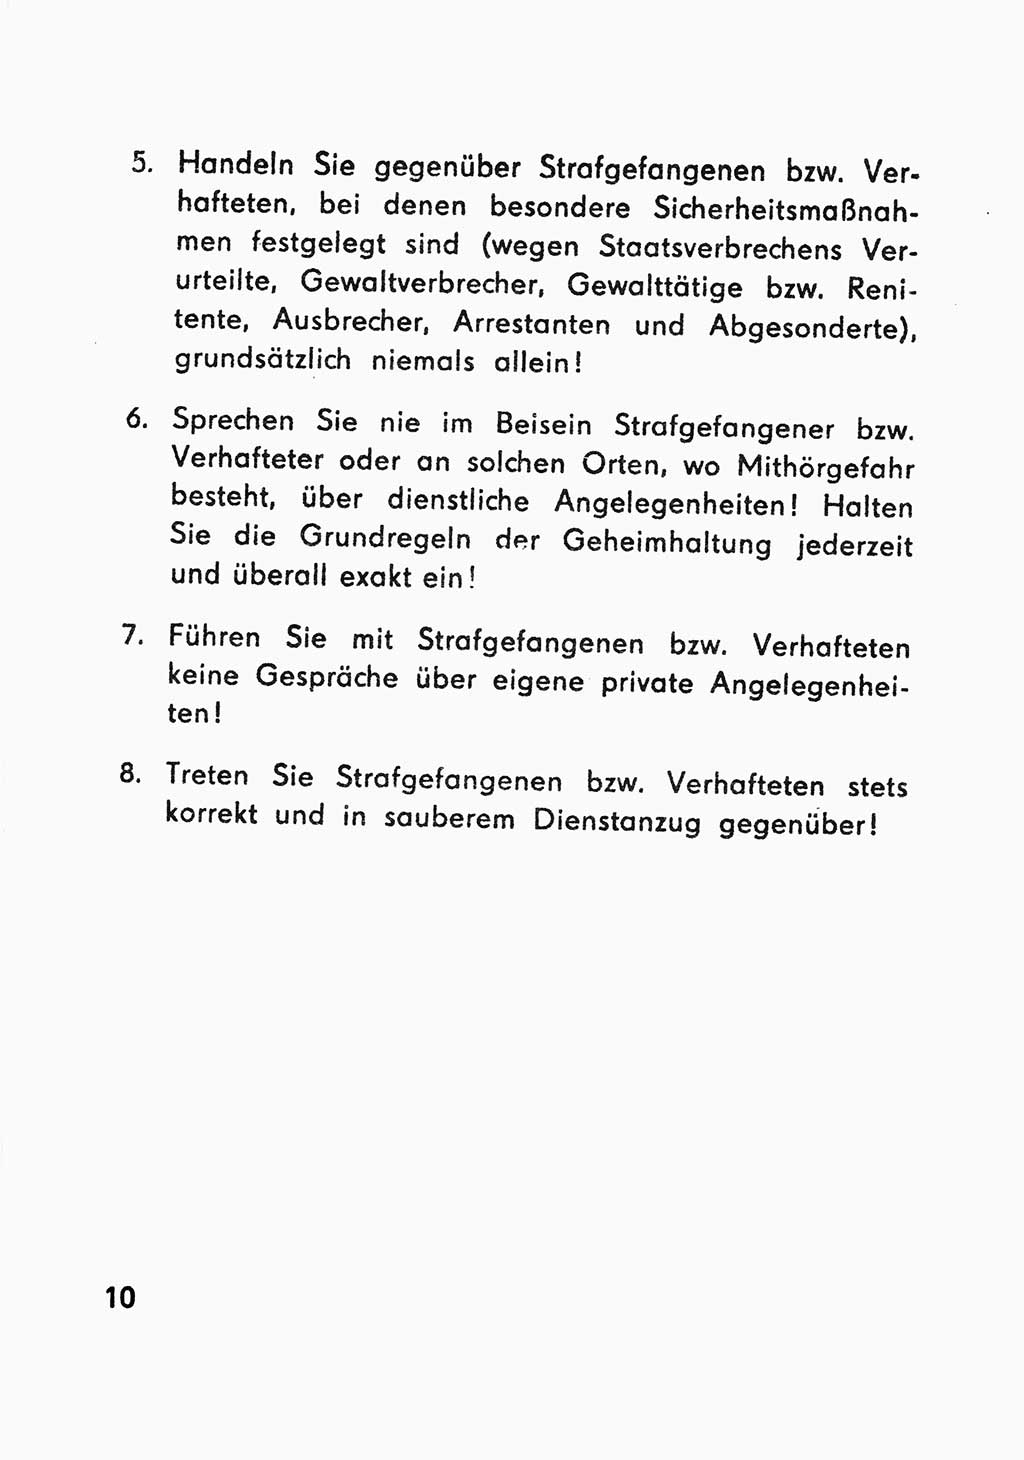 Merkbuch für SV-Angehörige [Strafvollzug (SV) Deutsche Demokratische Republik (DDR)] 1975, Seite 10 (SV-Angeh. DDR 1975, S. 10)